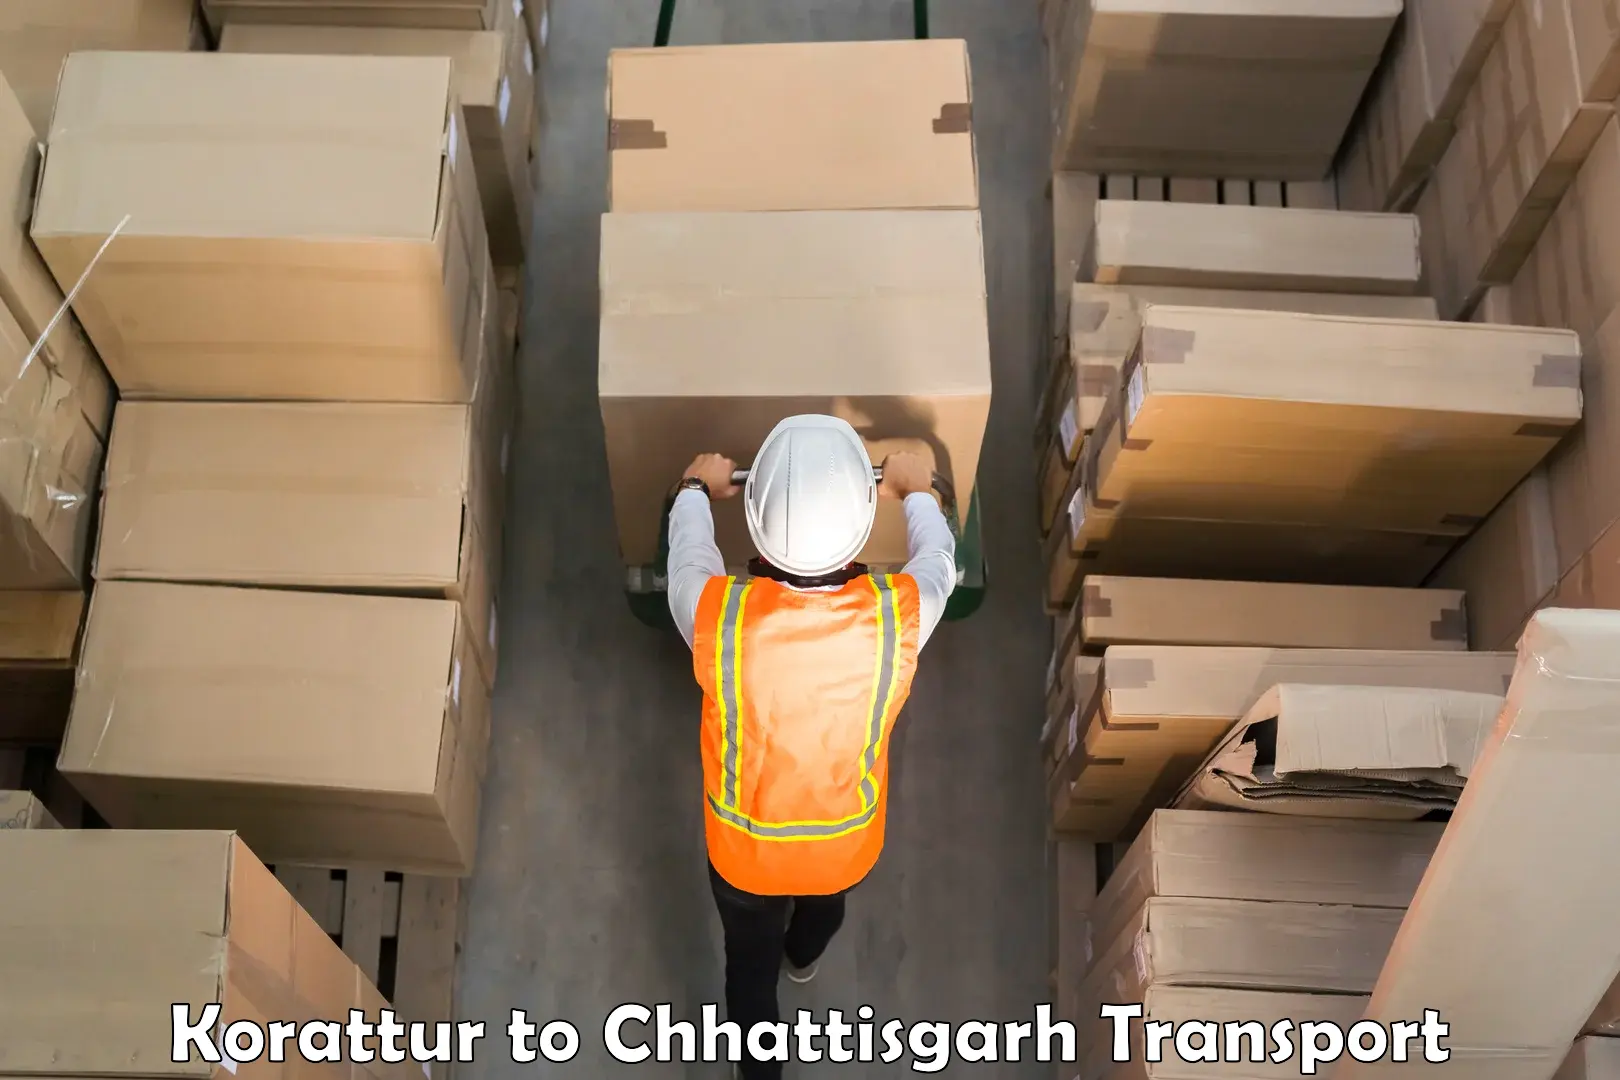 Parcel transport services in Korattur to Chhattisgarh